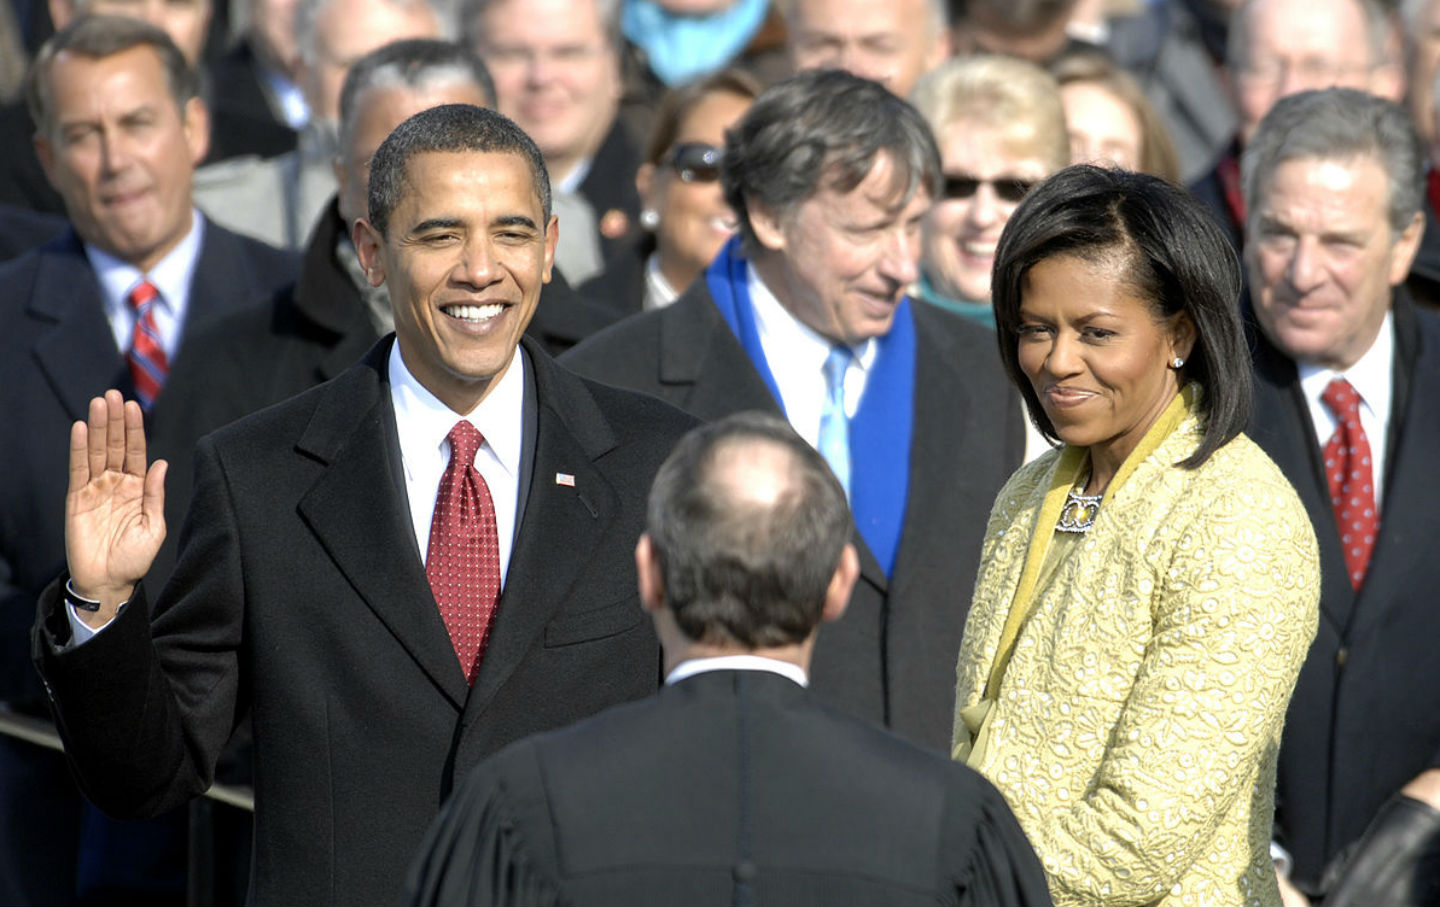 November 4, 2008: Barack Obama Is Elected President